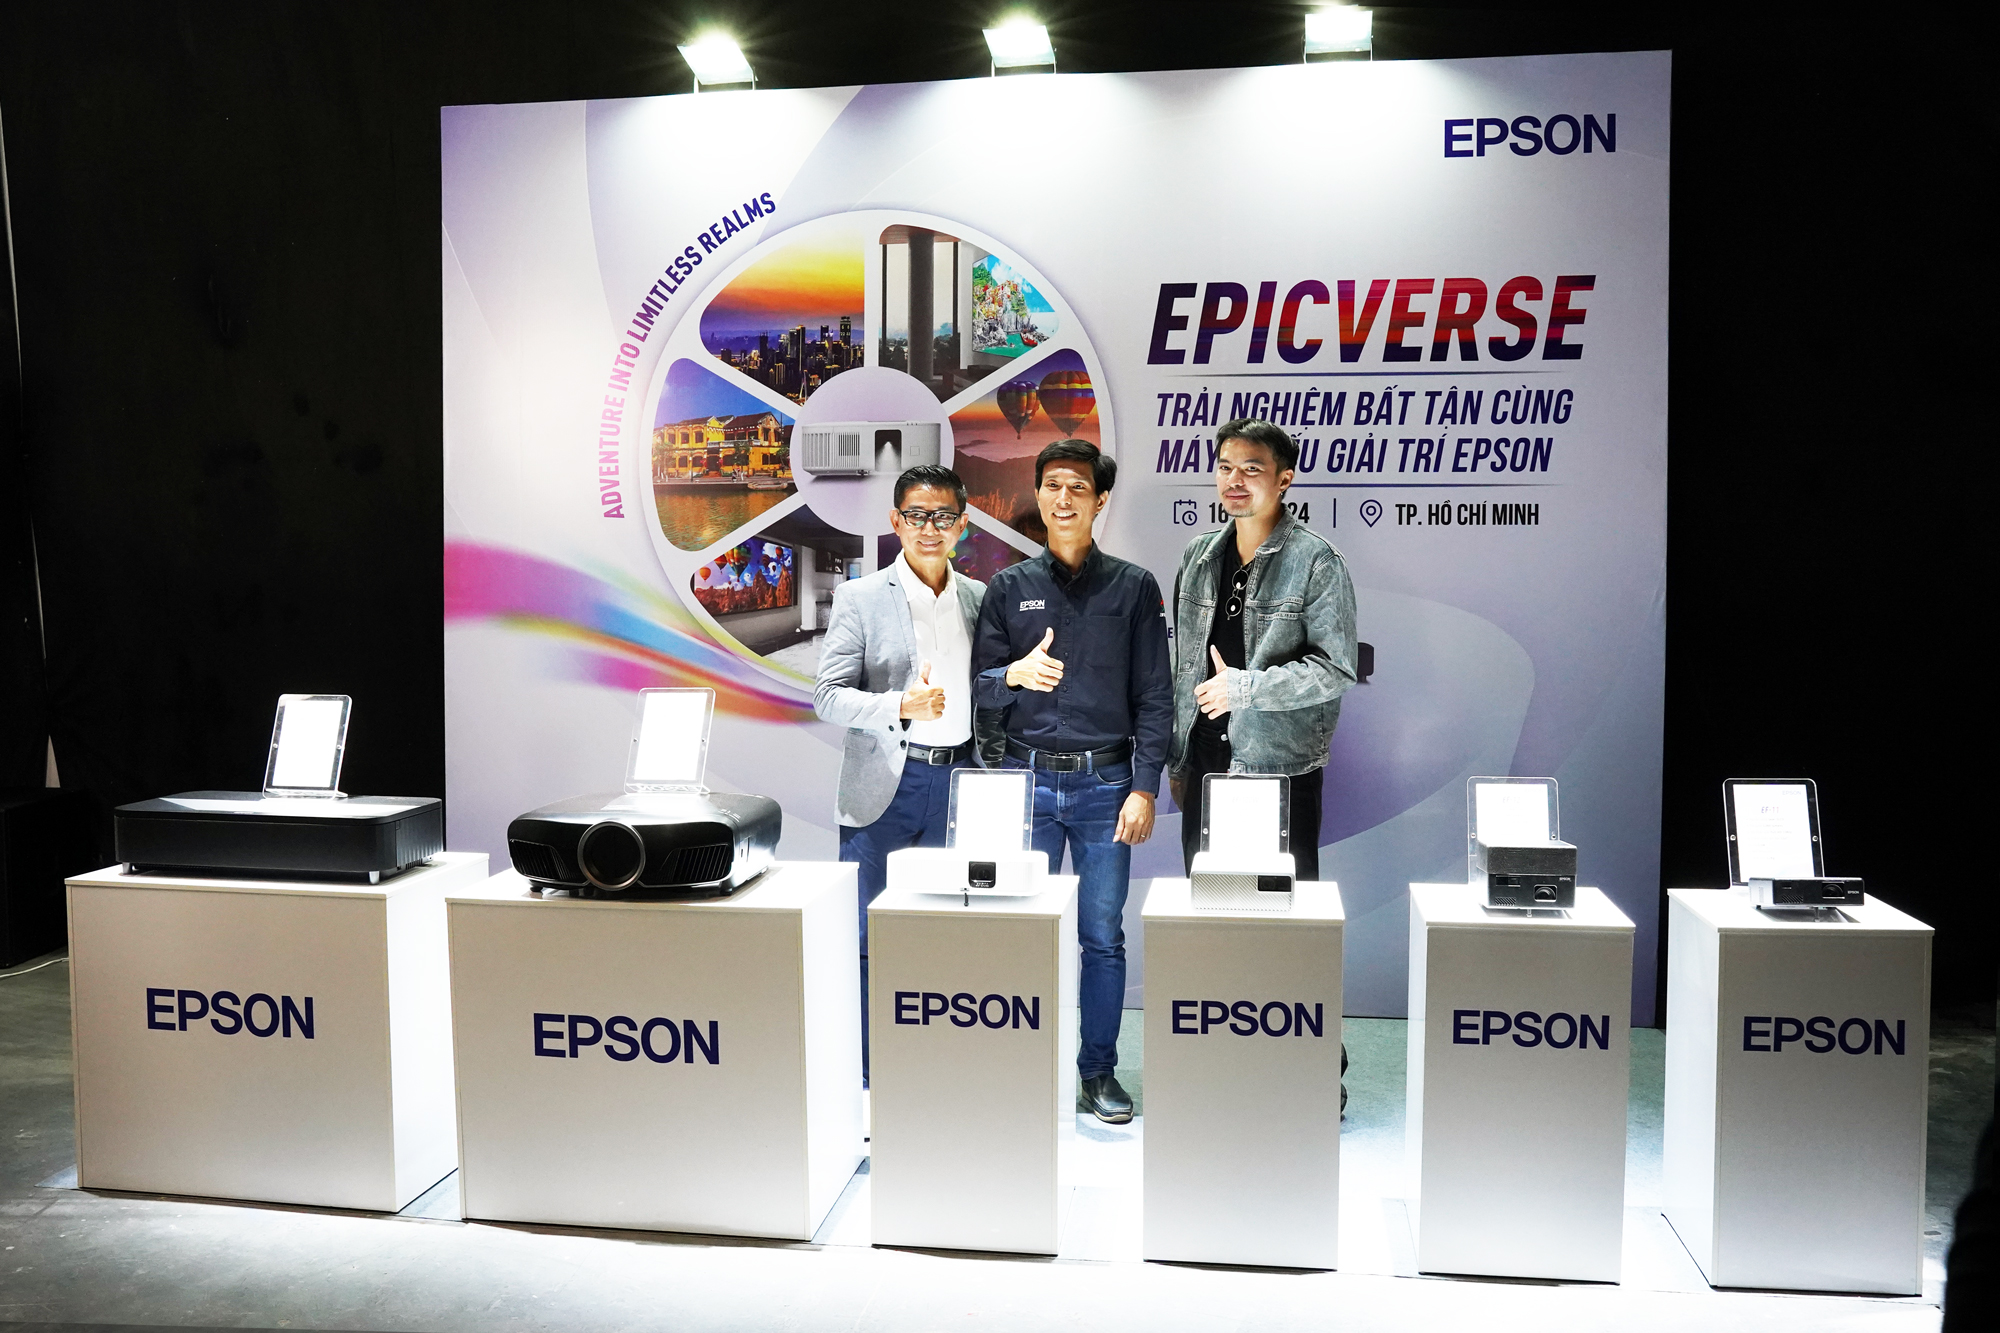 Talkshow với sự góp mặt của Lifestyle Blogger Lý Thành Cơ, Anh Nhựt Hùng - Chuyên gia Nghe nhìn và anh Huỳnh Lý Quang Vũ - Đại diện Epson.